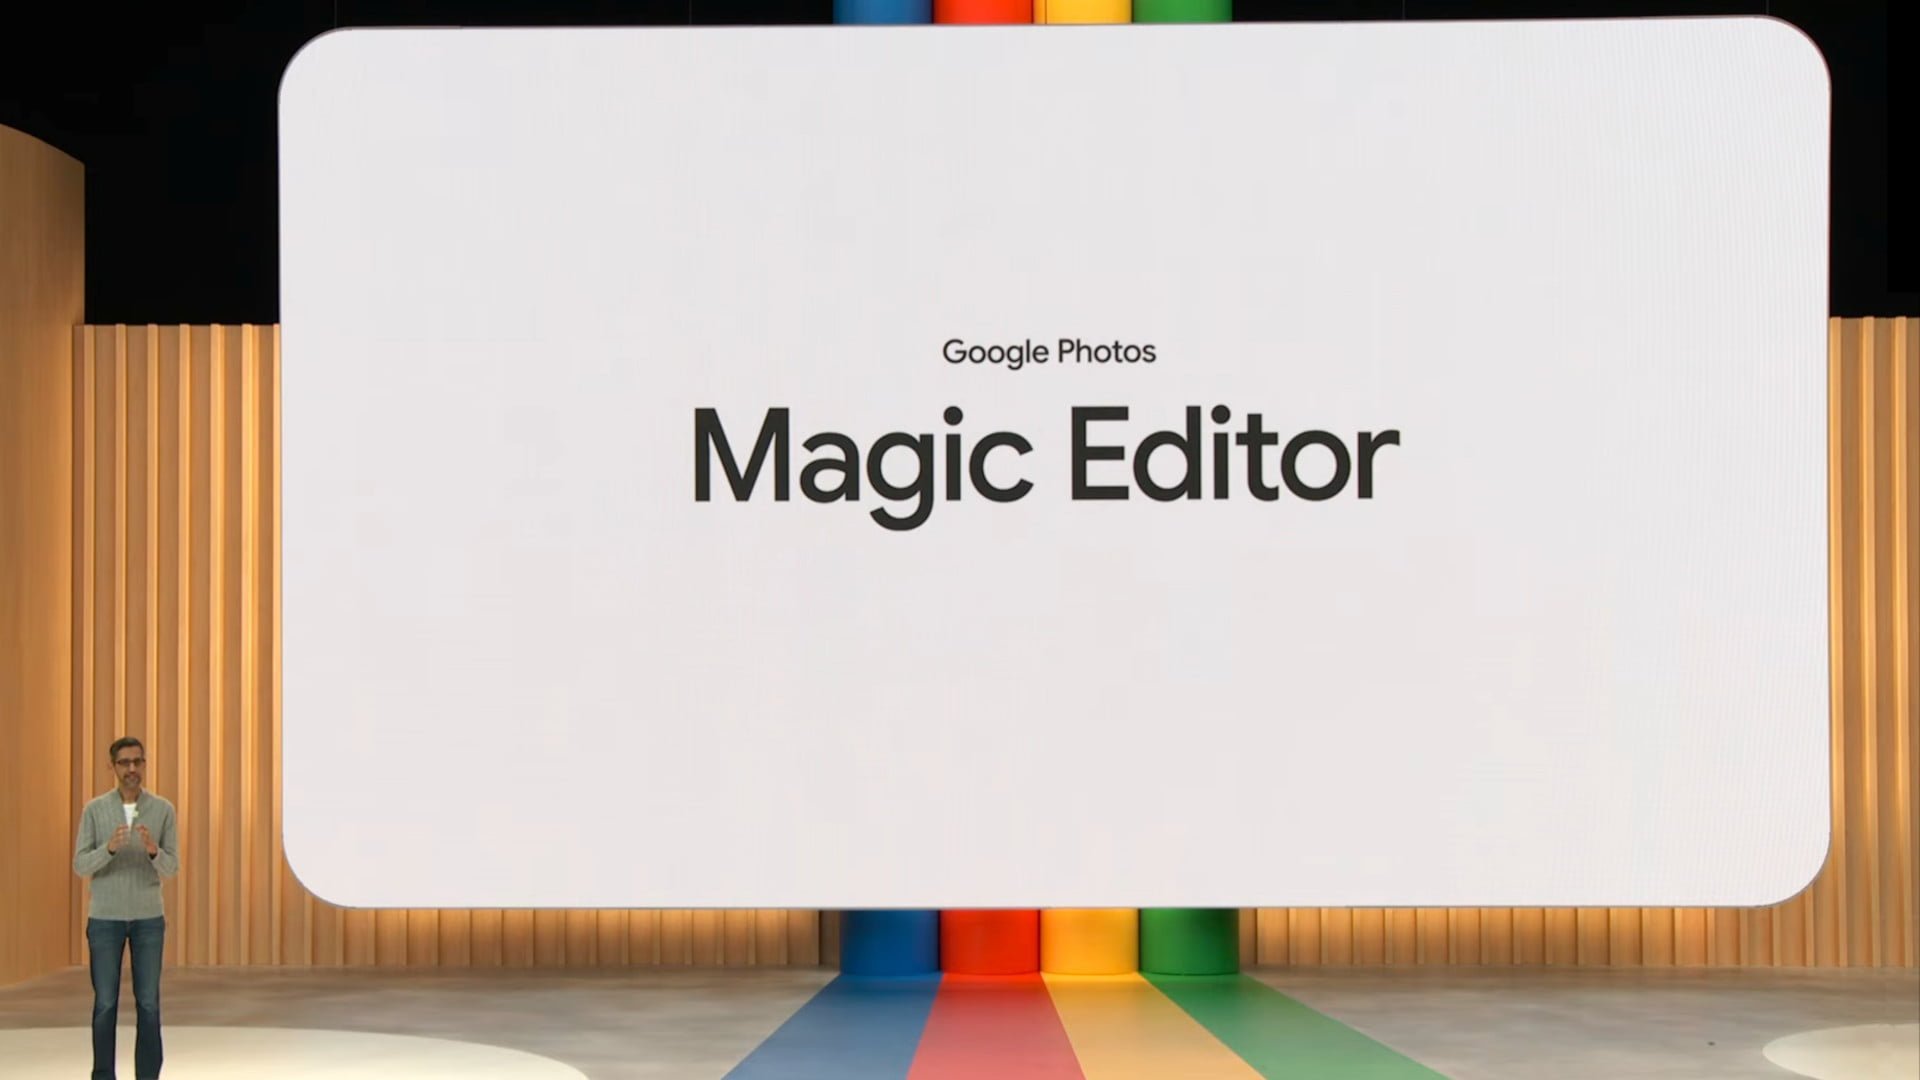 Magic Editor в Google Photos не будет редактировать лица, документы и крупные объекты